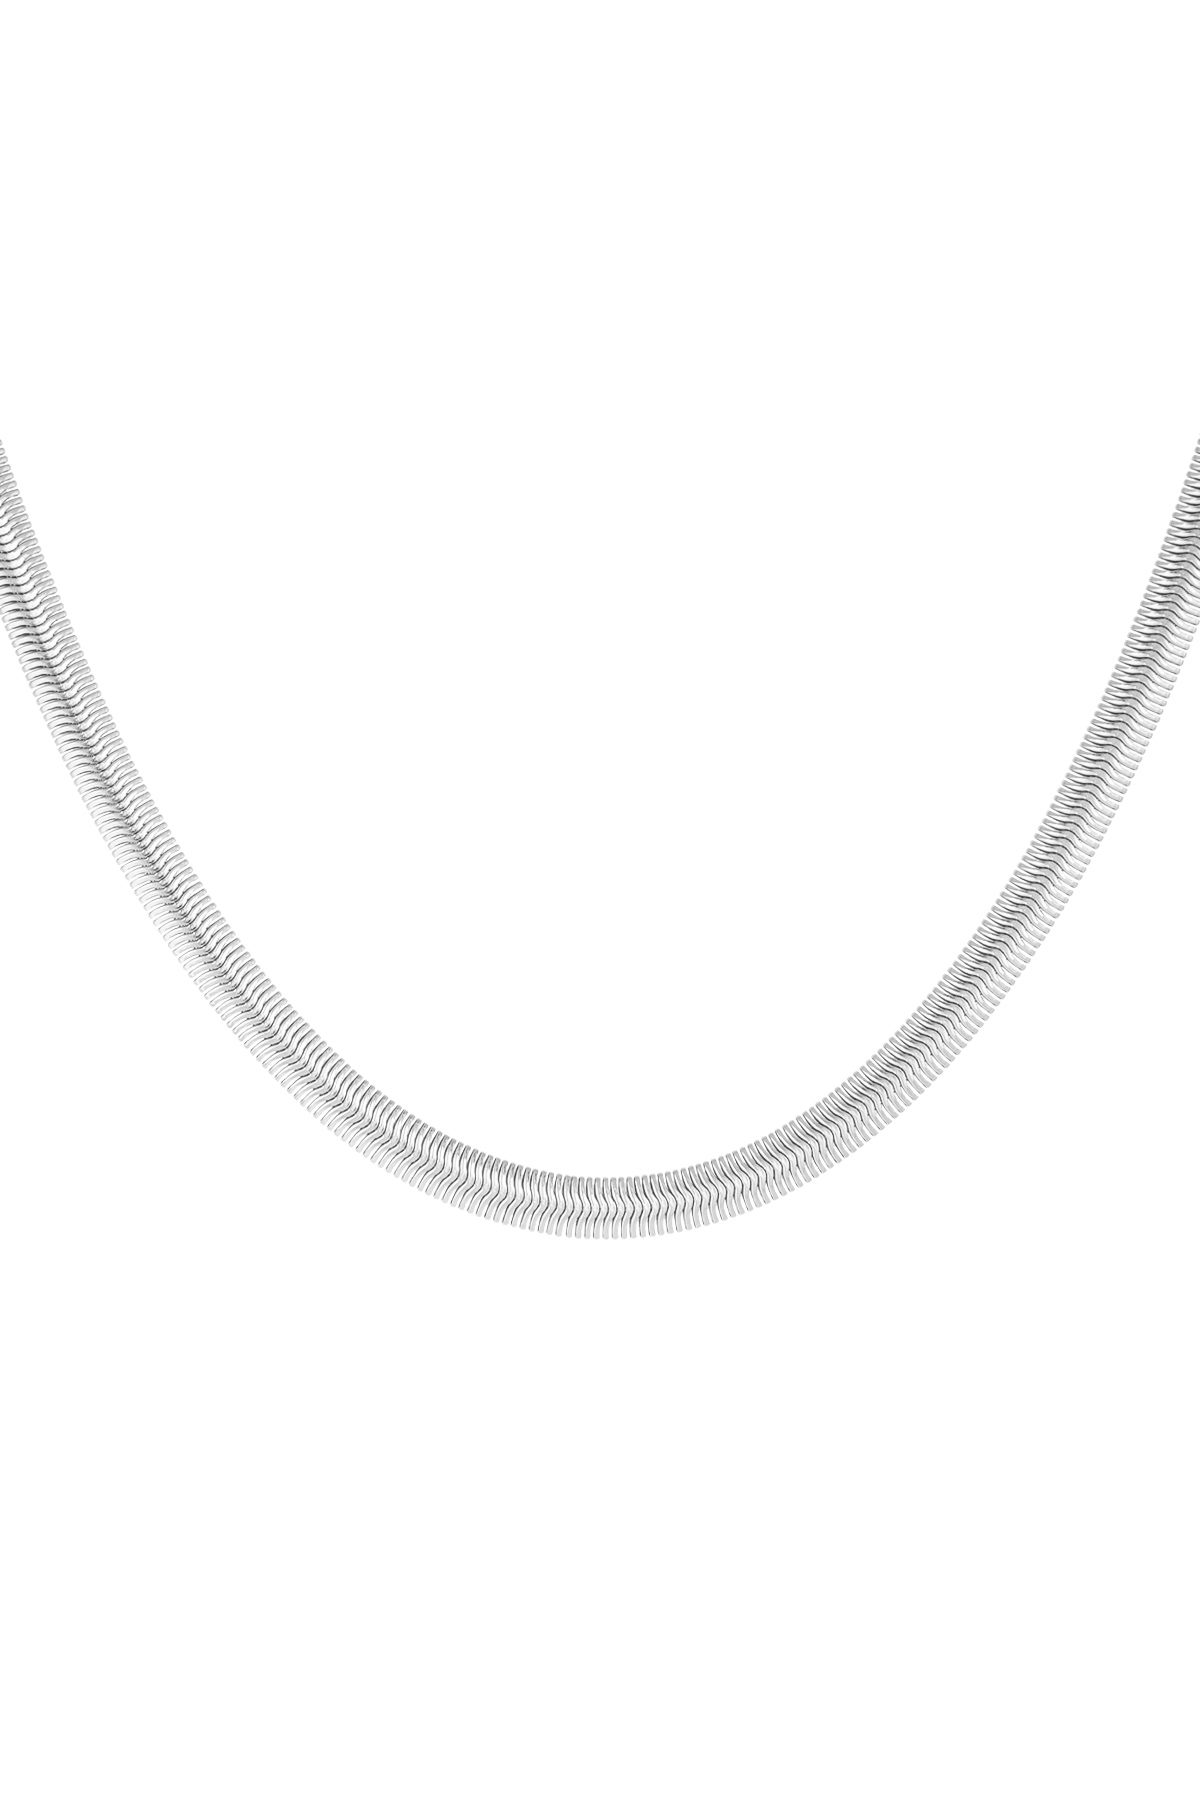 Halskette flach mit Aufdruck - Silber - 6,0MM